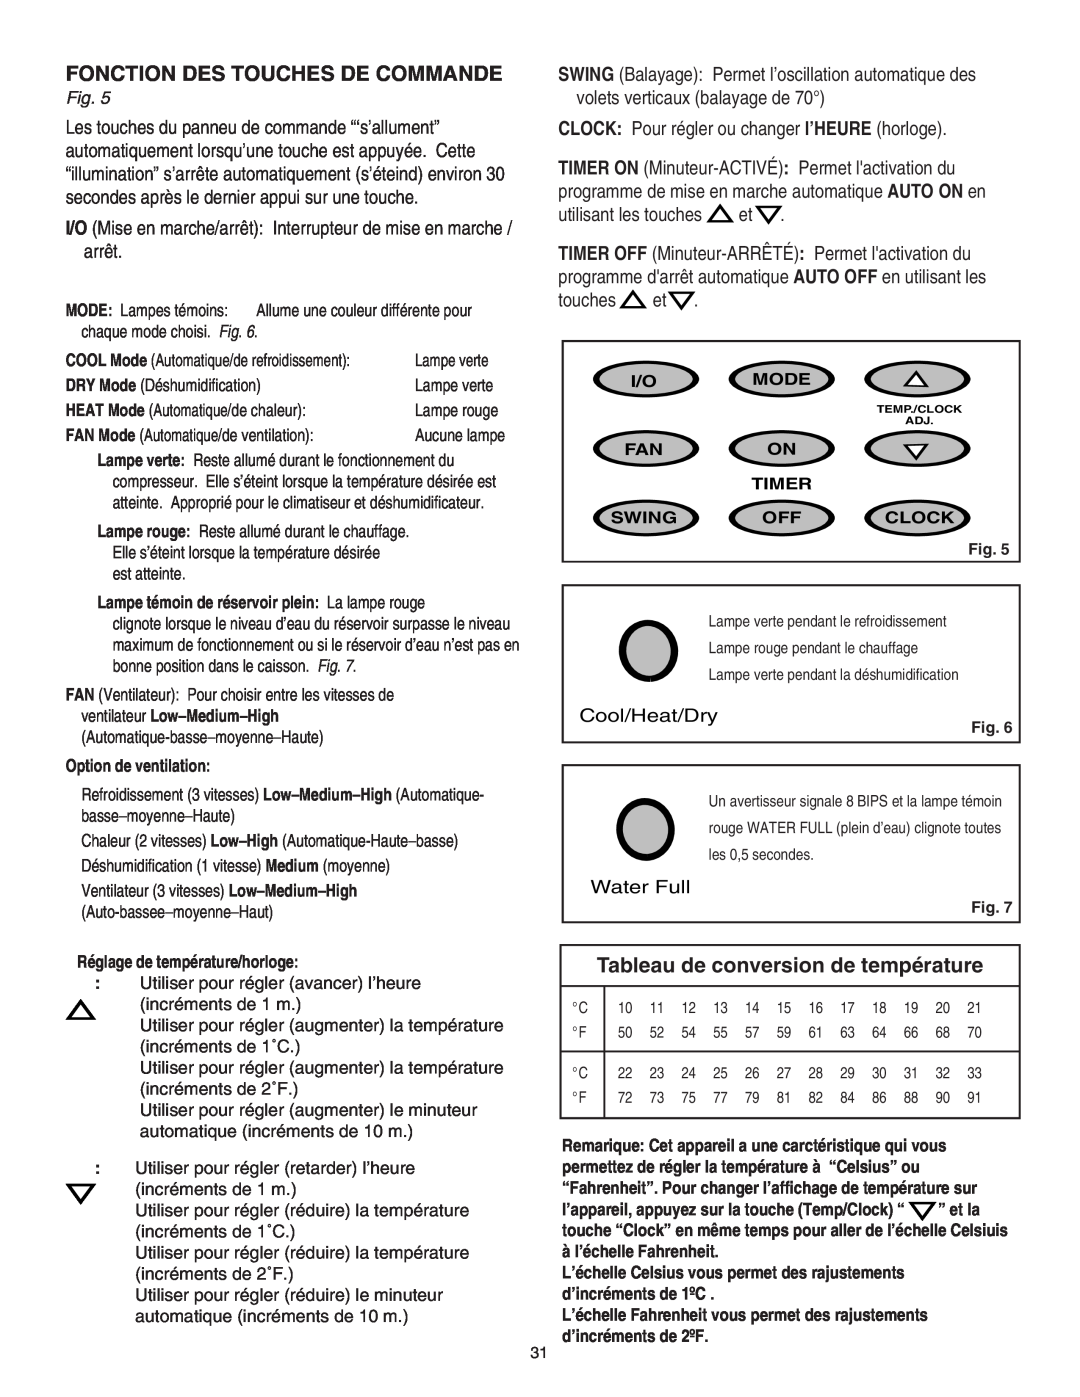 Danby SPAC8499 manual Fonction Des Touches De Commande, Tableau de conversion de température 